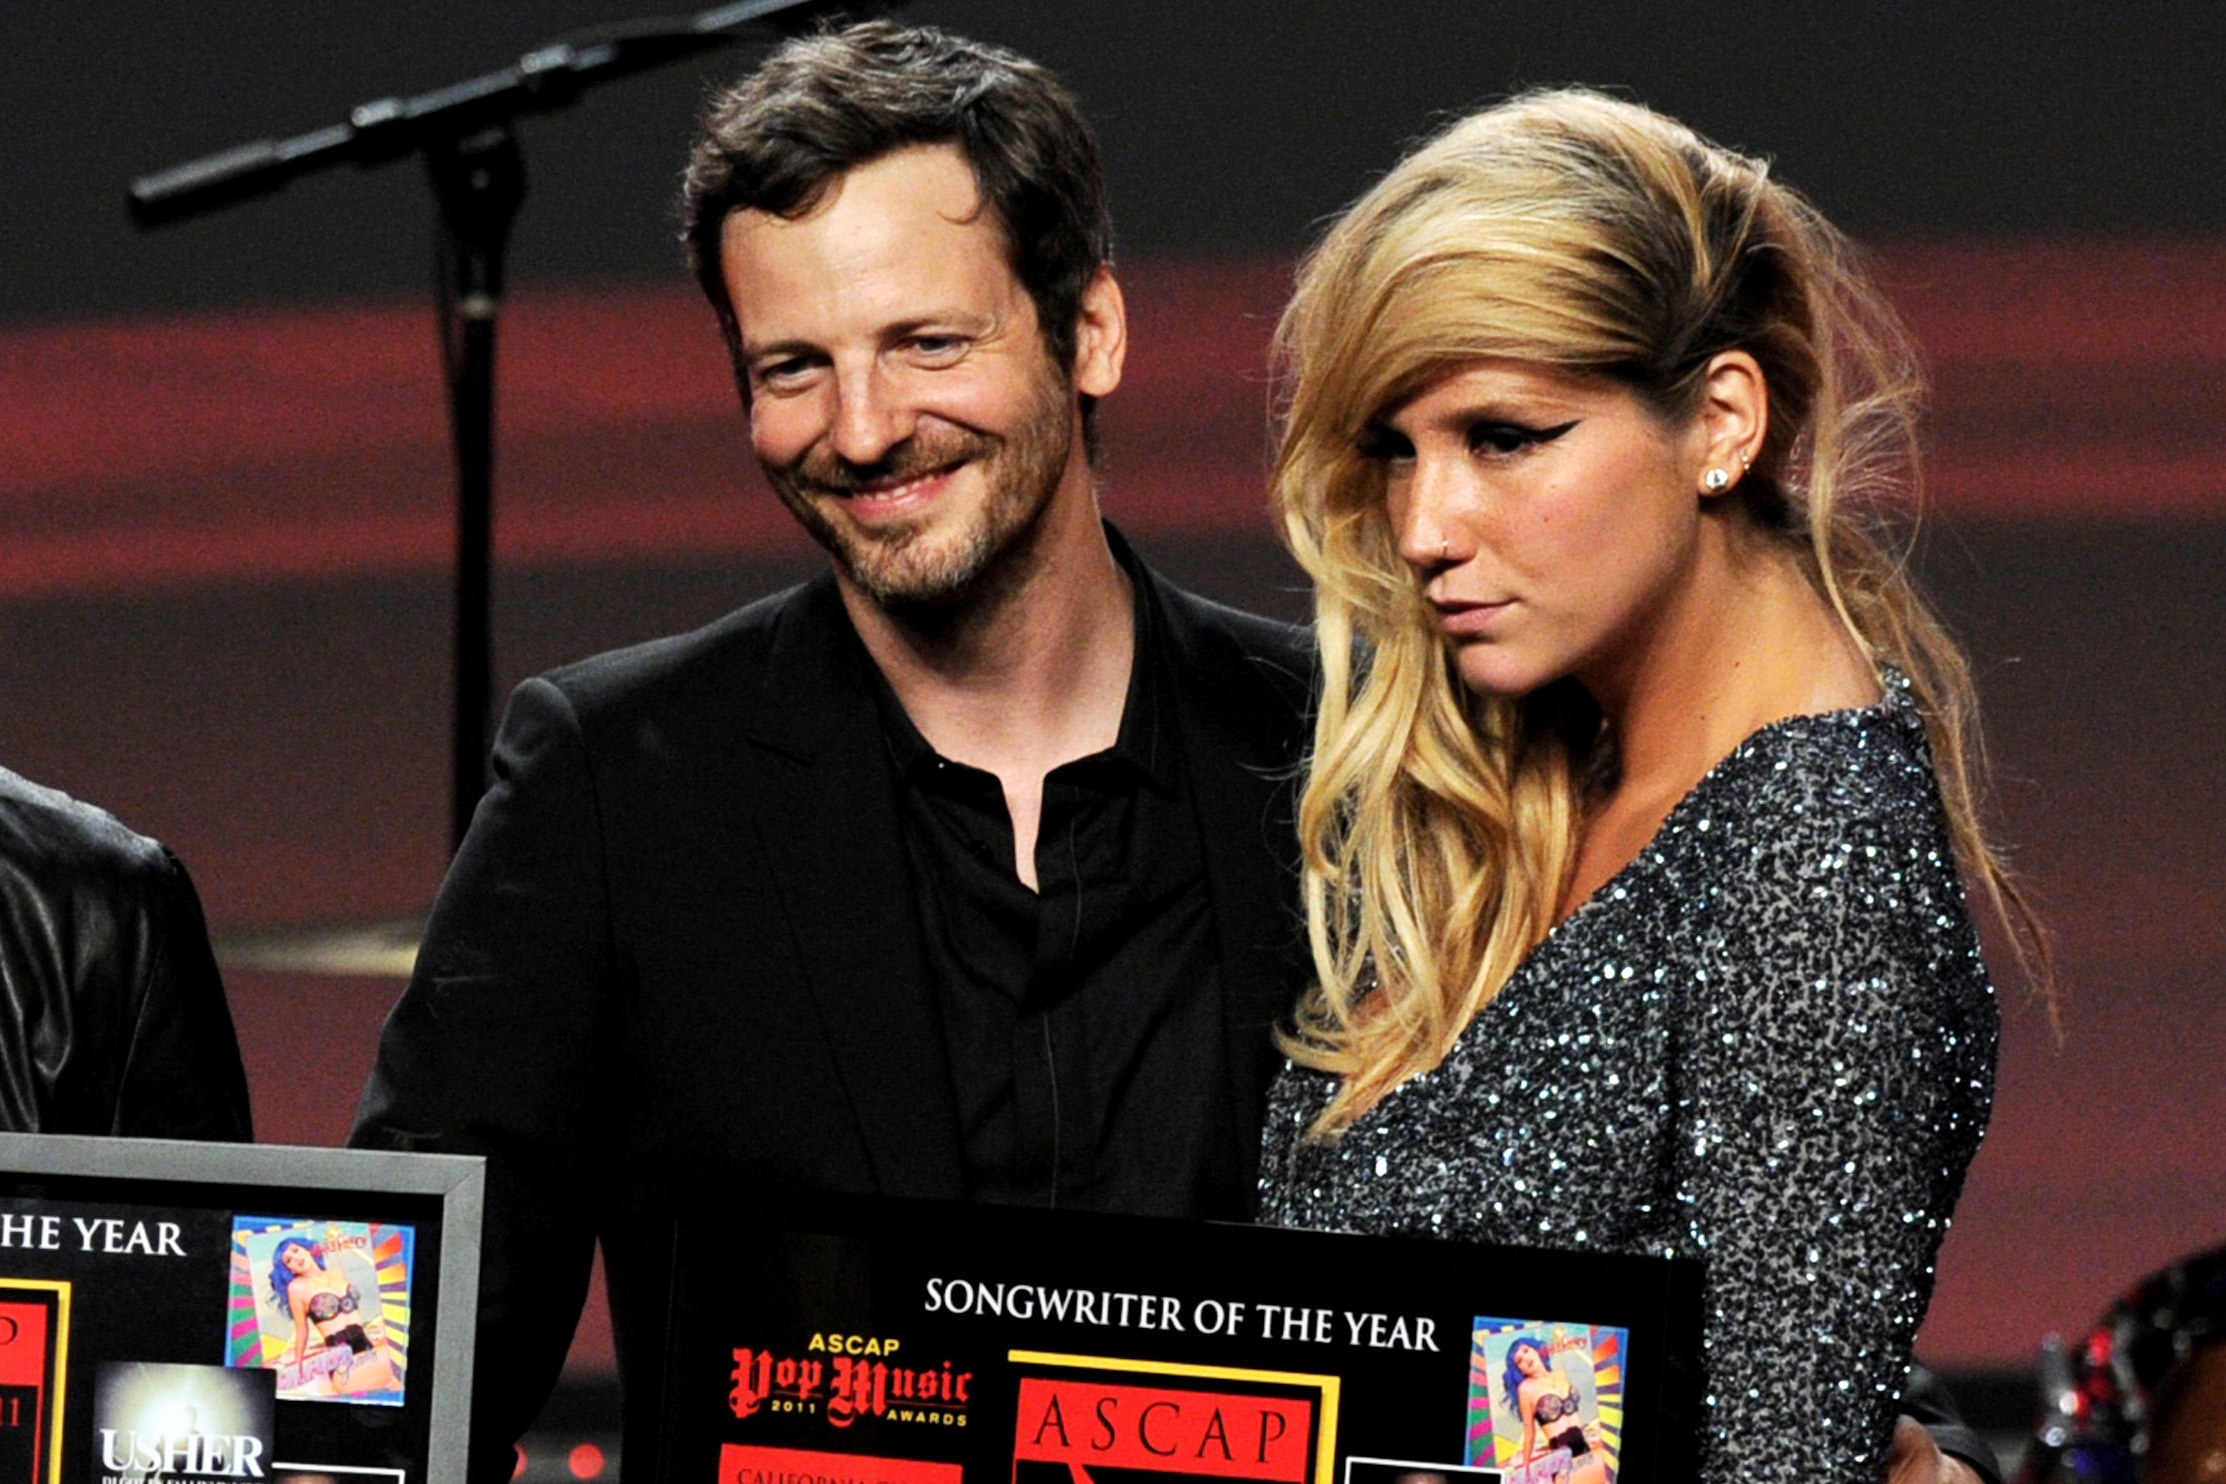 O produtor Lukasz Gottwald ao lado da cantora Kesha durante a premiação ASCAP no ano de 2011 (FOTO: NY Daily News)